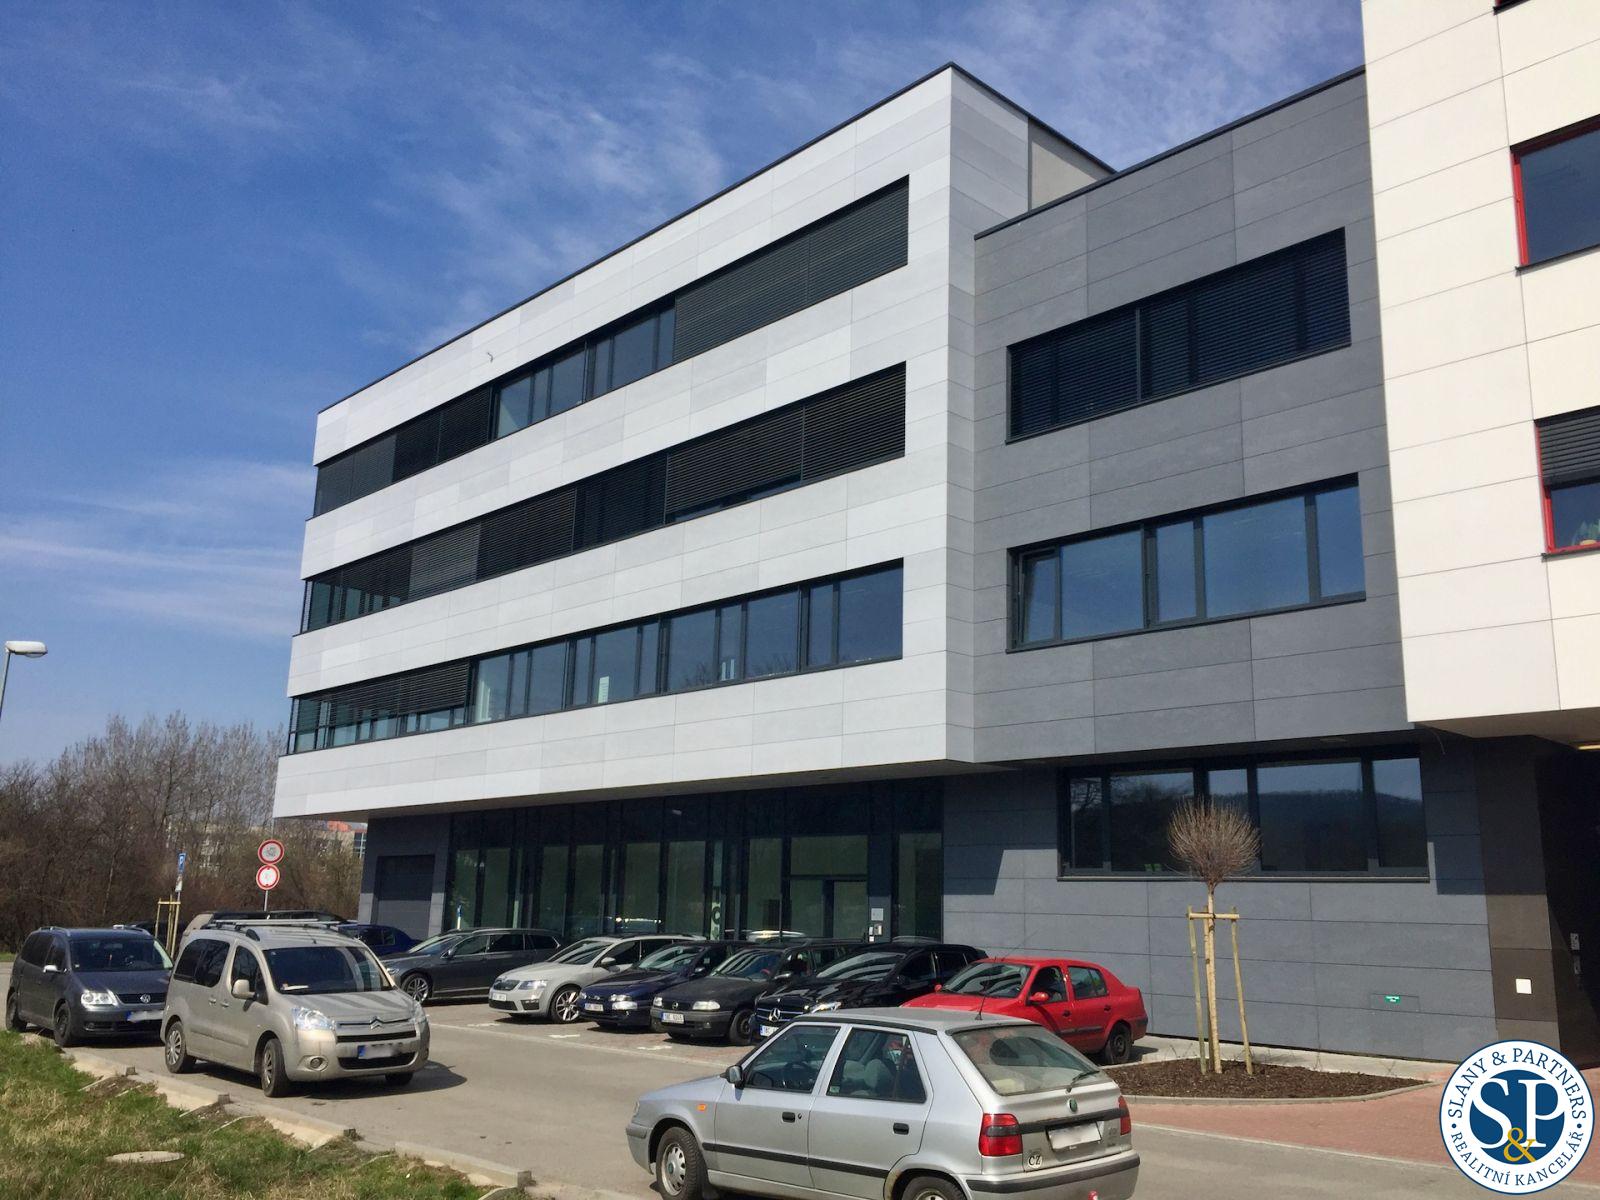 Pronájem kanceláře o velikosti 31 m2 s přístupem na terasu v moderní administrativní budově Brno - Ž